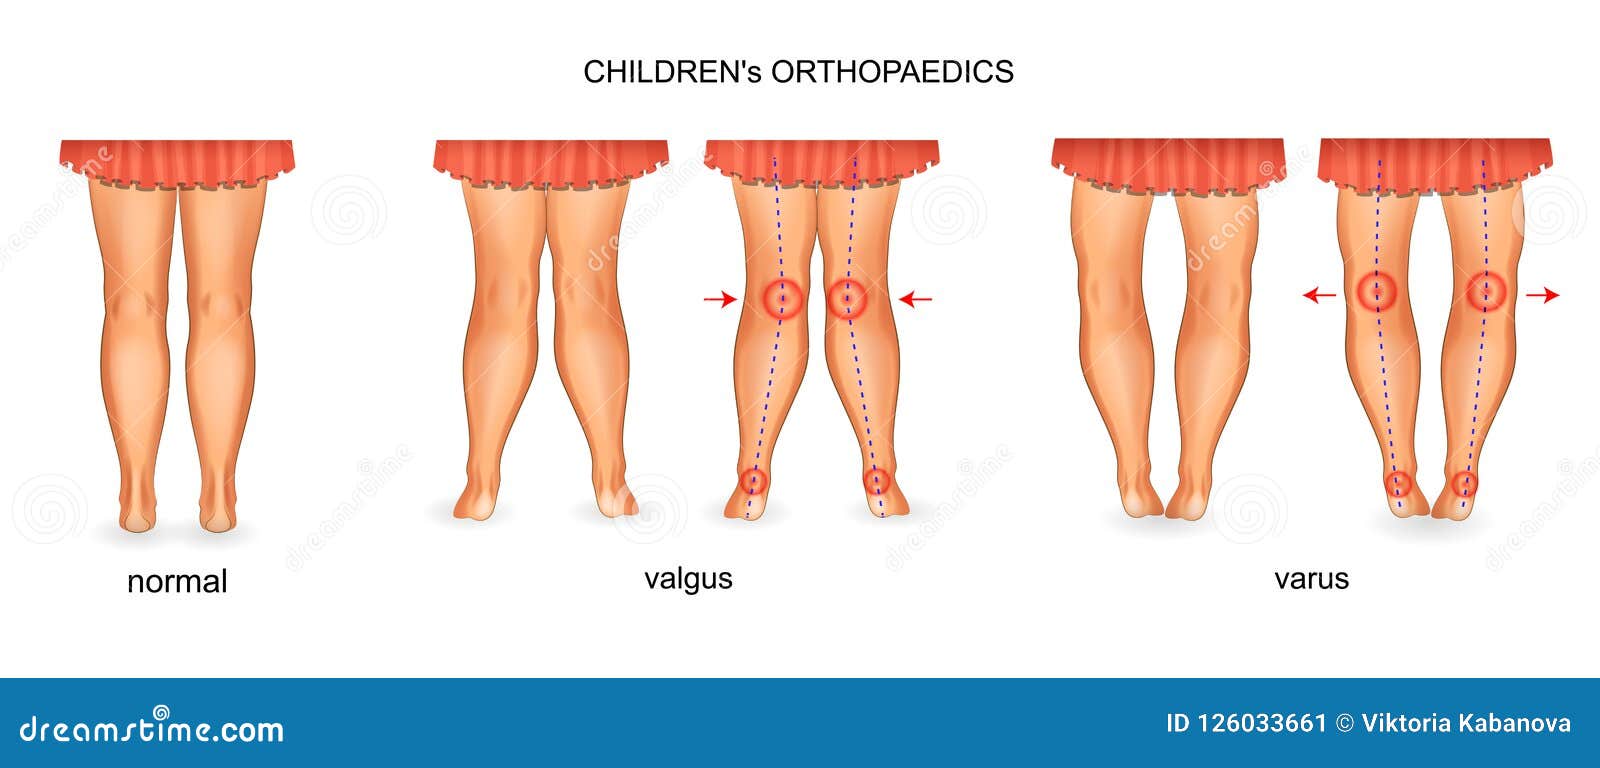 pediatric orthopedics. valgus and varus